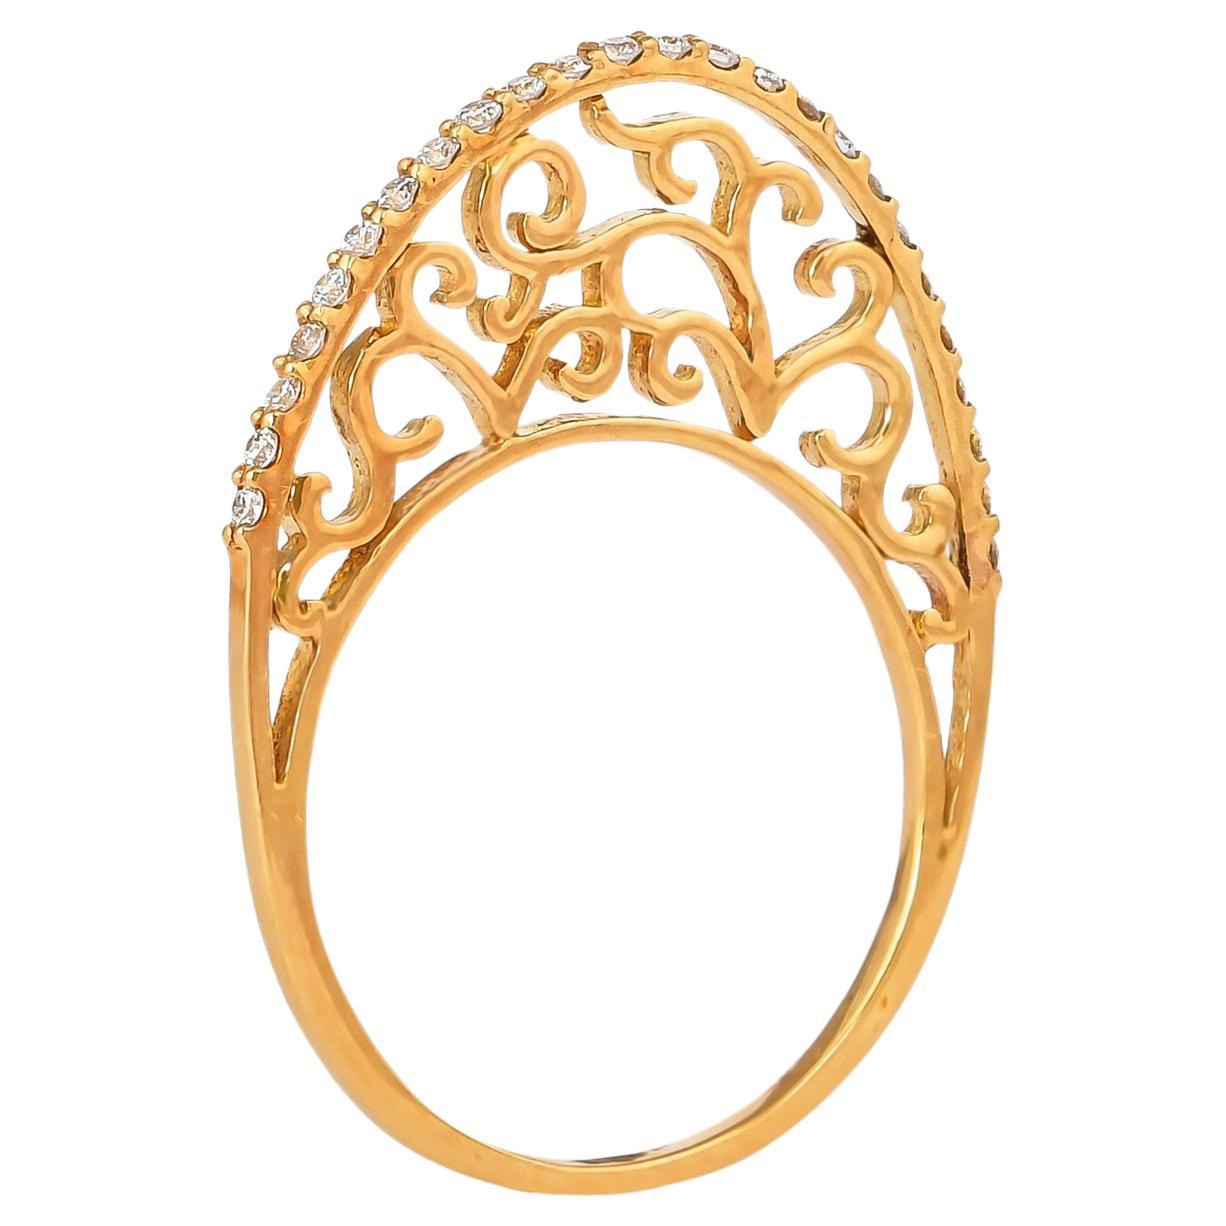 0.171 Carat Diamond Ring in 18 Karat Rose Gold For Sale